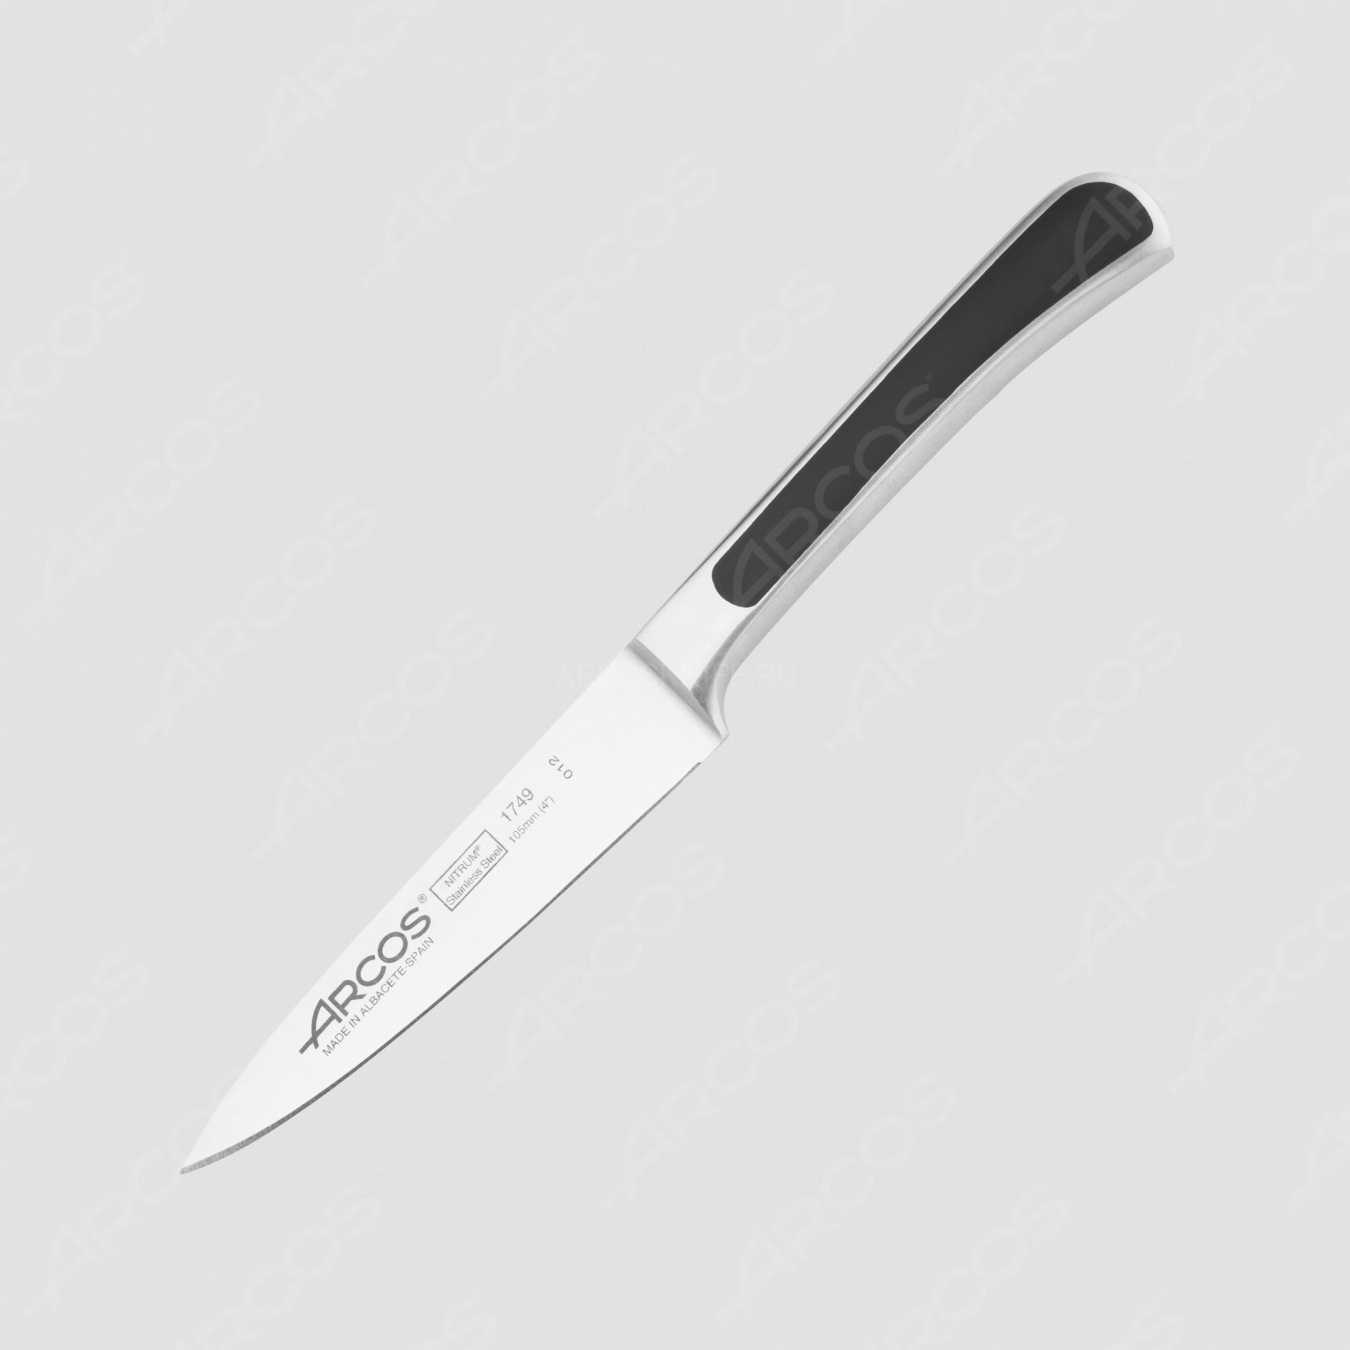 Нож кухонный для чистки овощей 10 см, серия Saeta, ARCOS, Испания